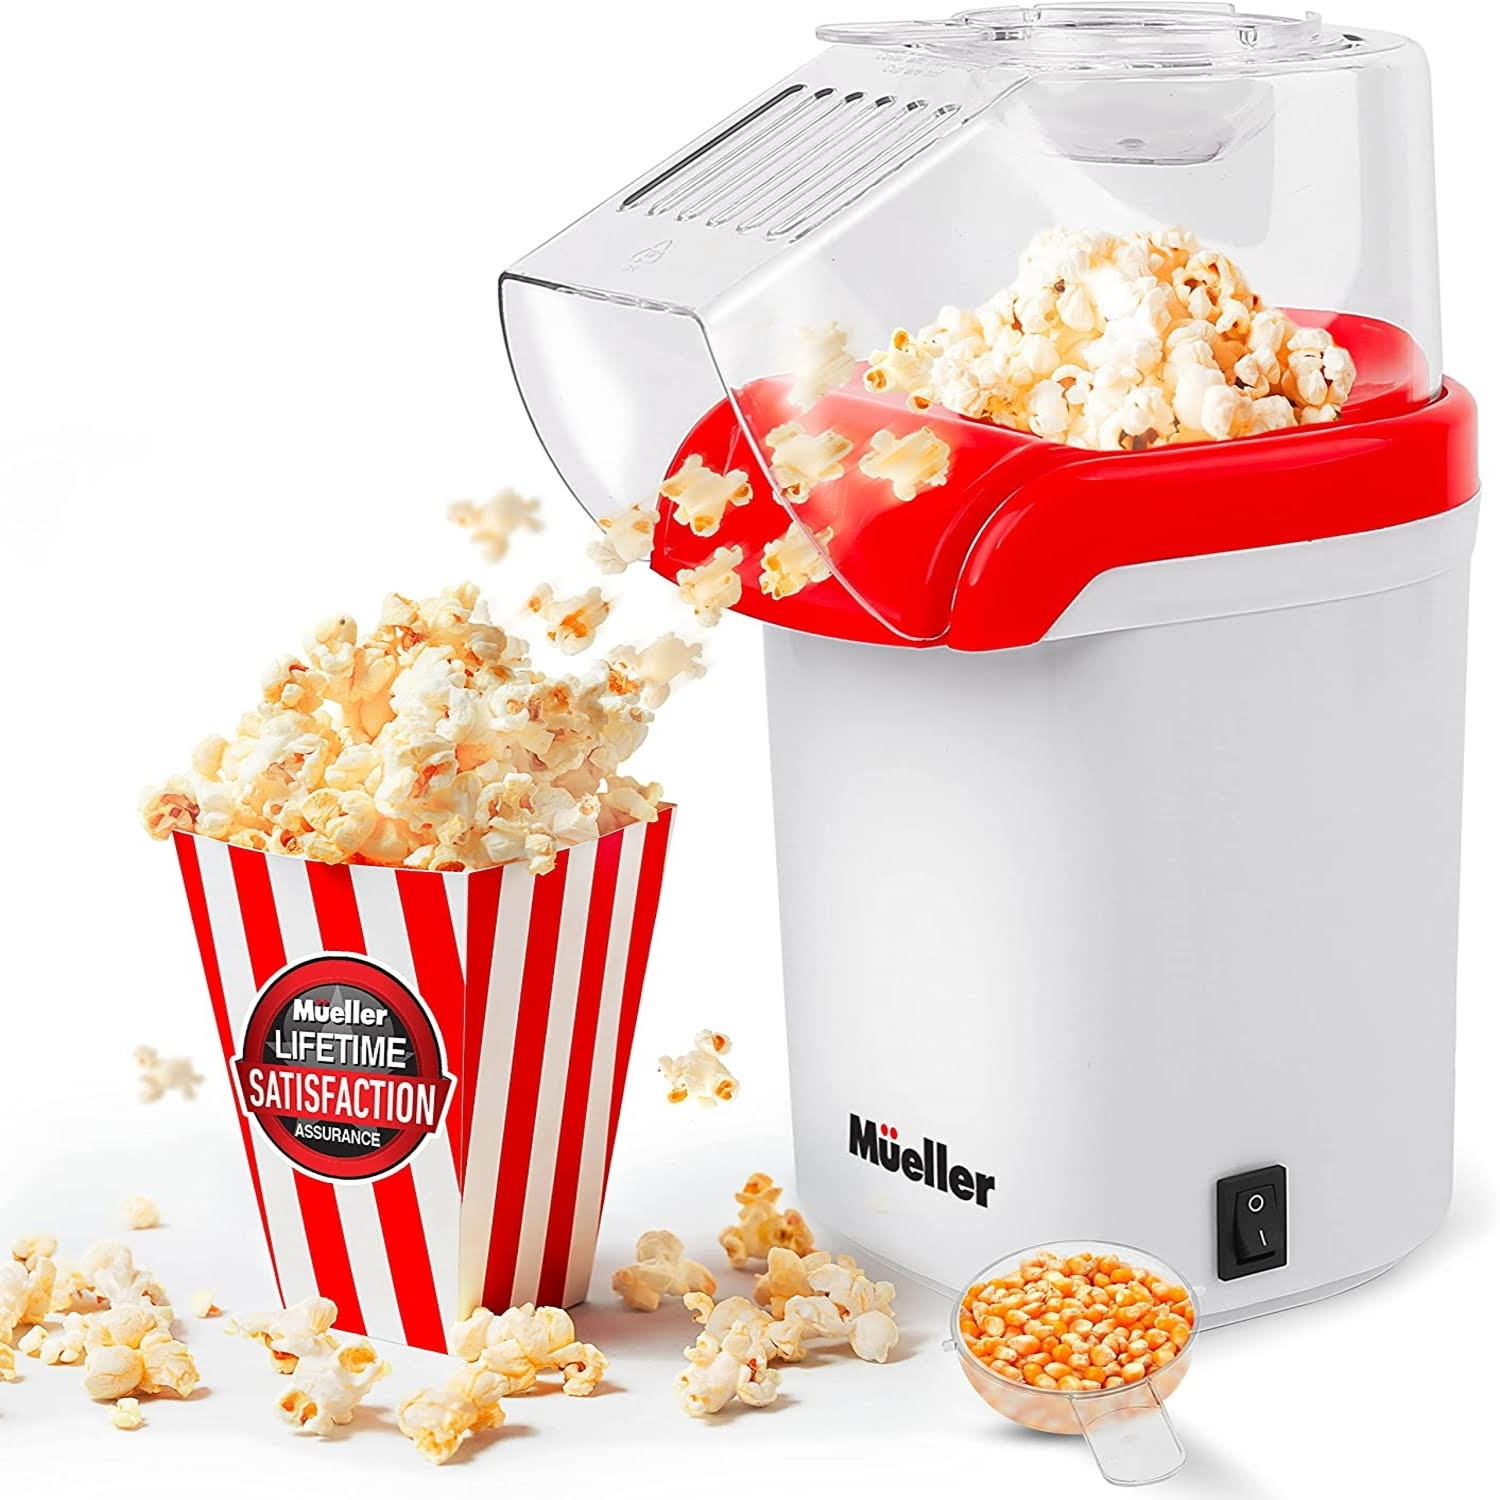 https://www.momjunction.com/wp-content/uploads/product-images/mueller-ultra-pop-popcorn-popper_afl1495.jpg